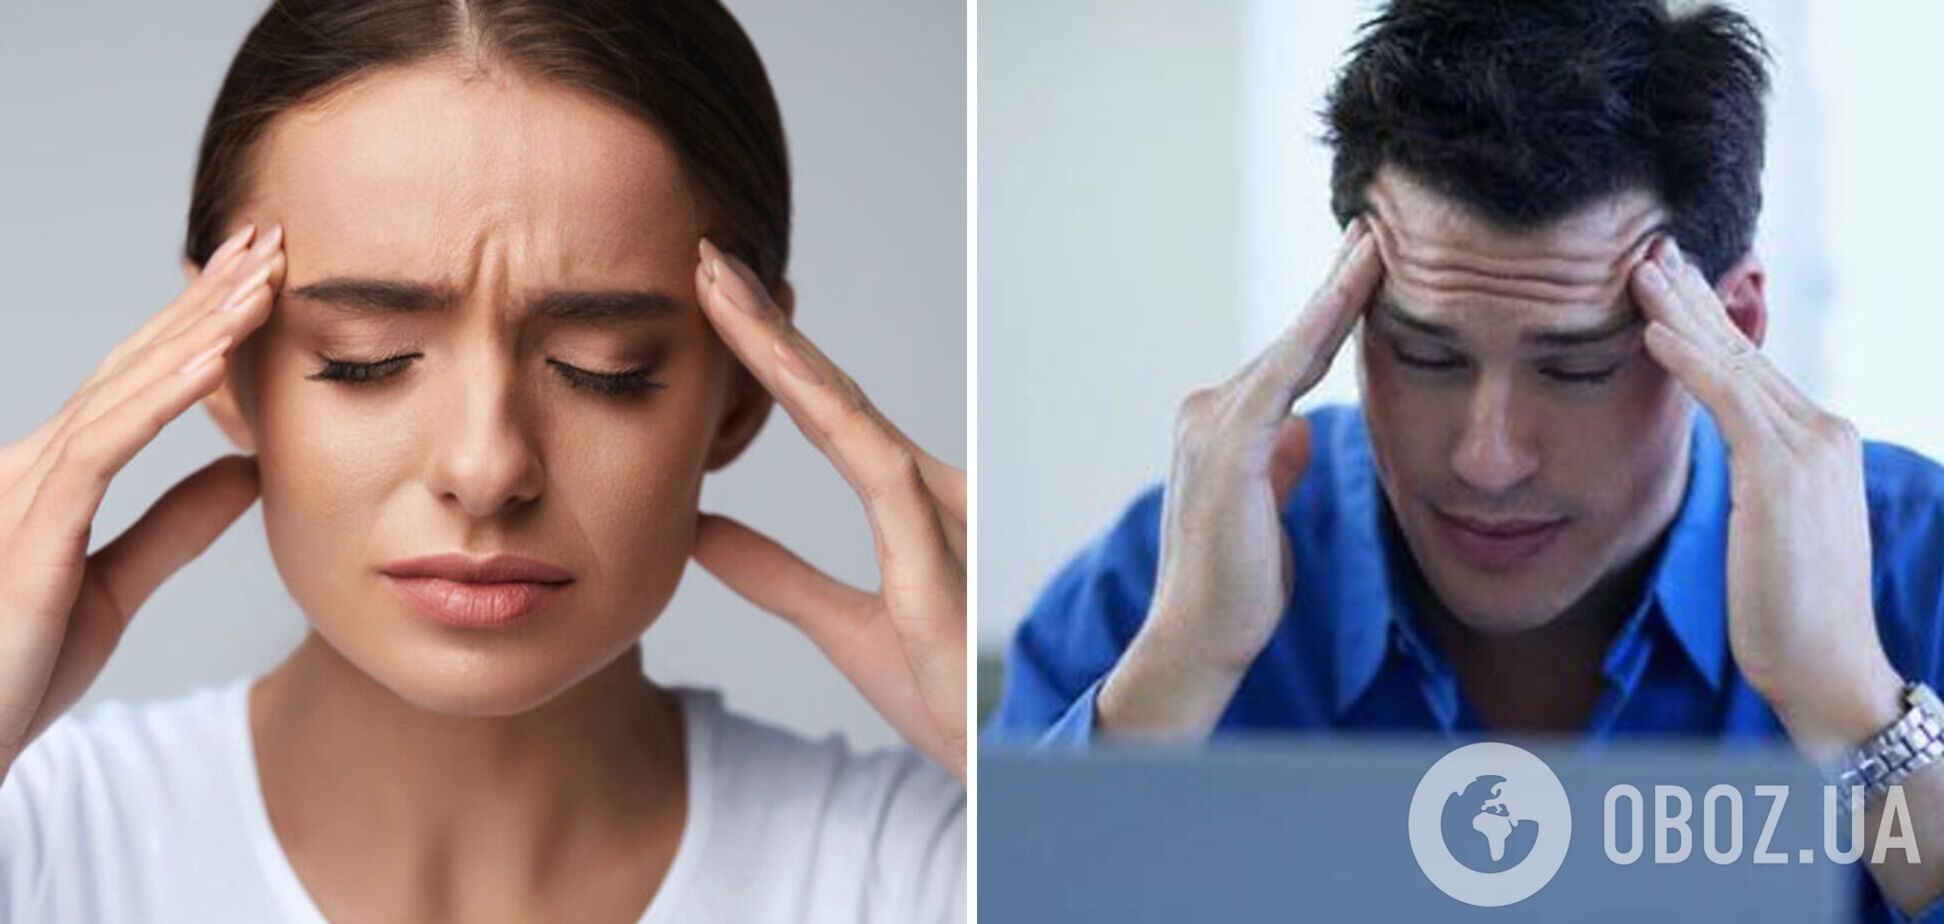 Как быстро избавиться от головной боли без медикаментов: действенные домашние методы